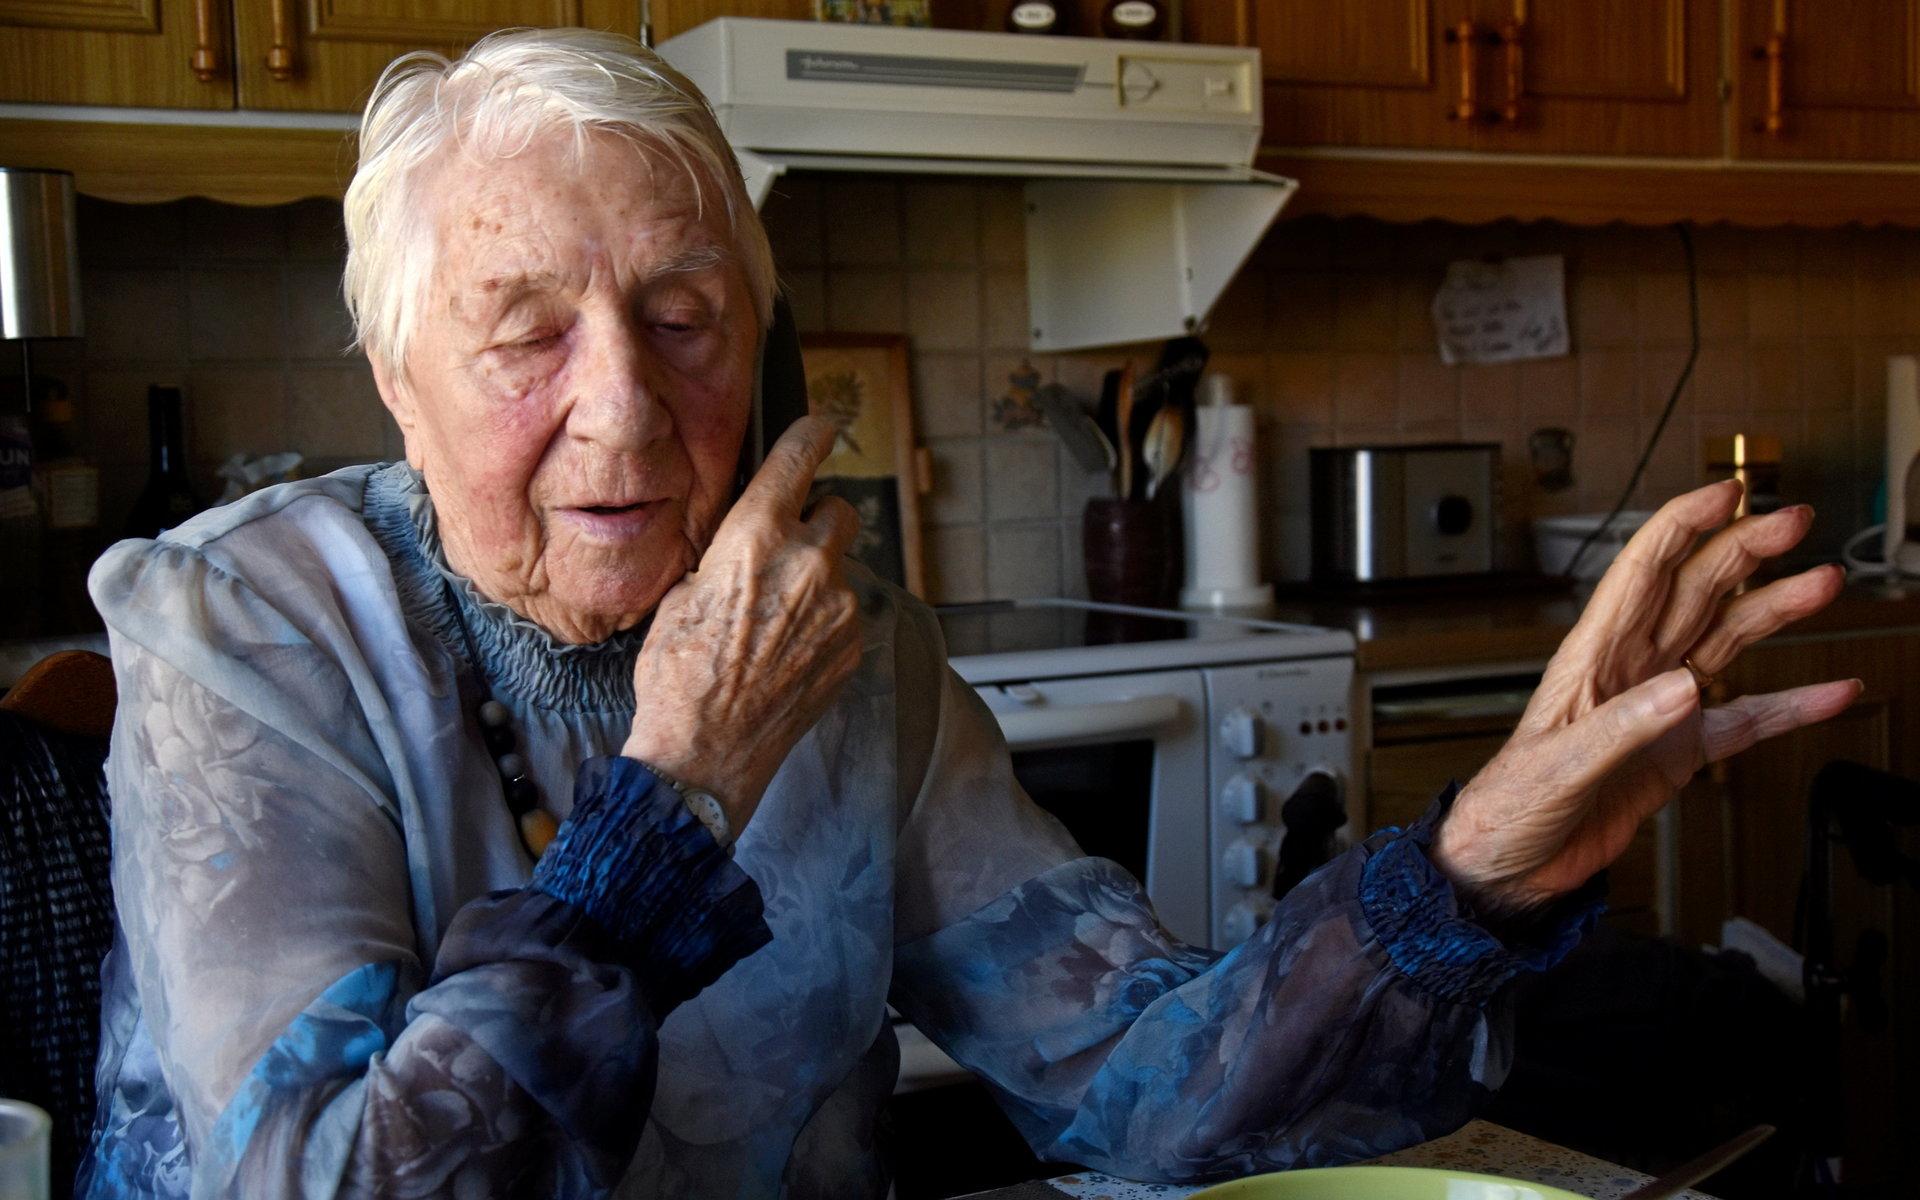 Mitt under intervjun ringer en bekant och grattar henne – samma dag HN träffade henne var det hennes 94:e födelsedag.